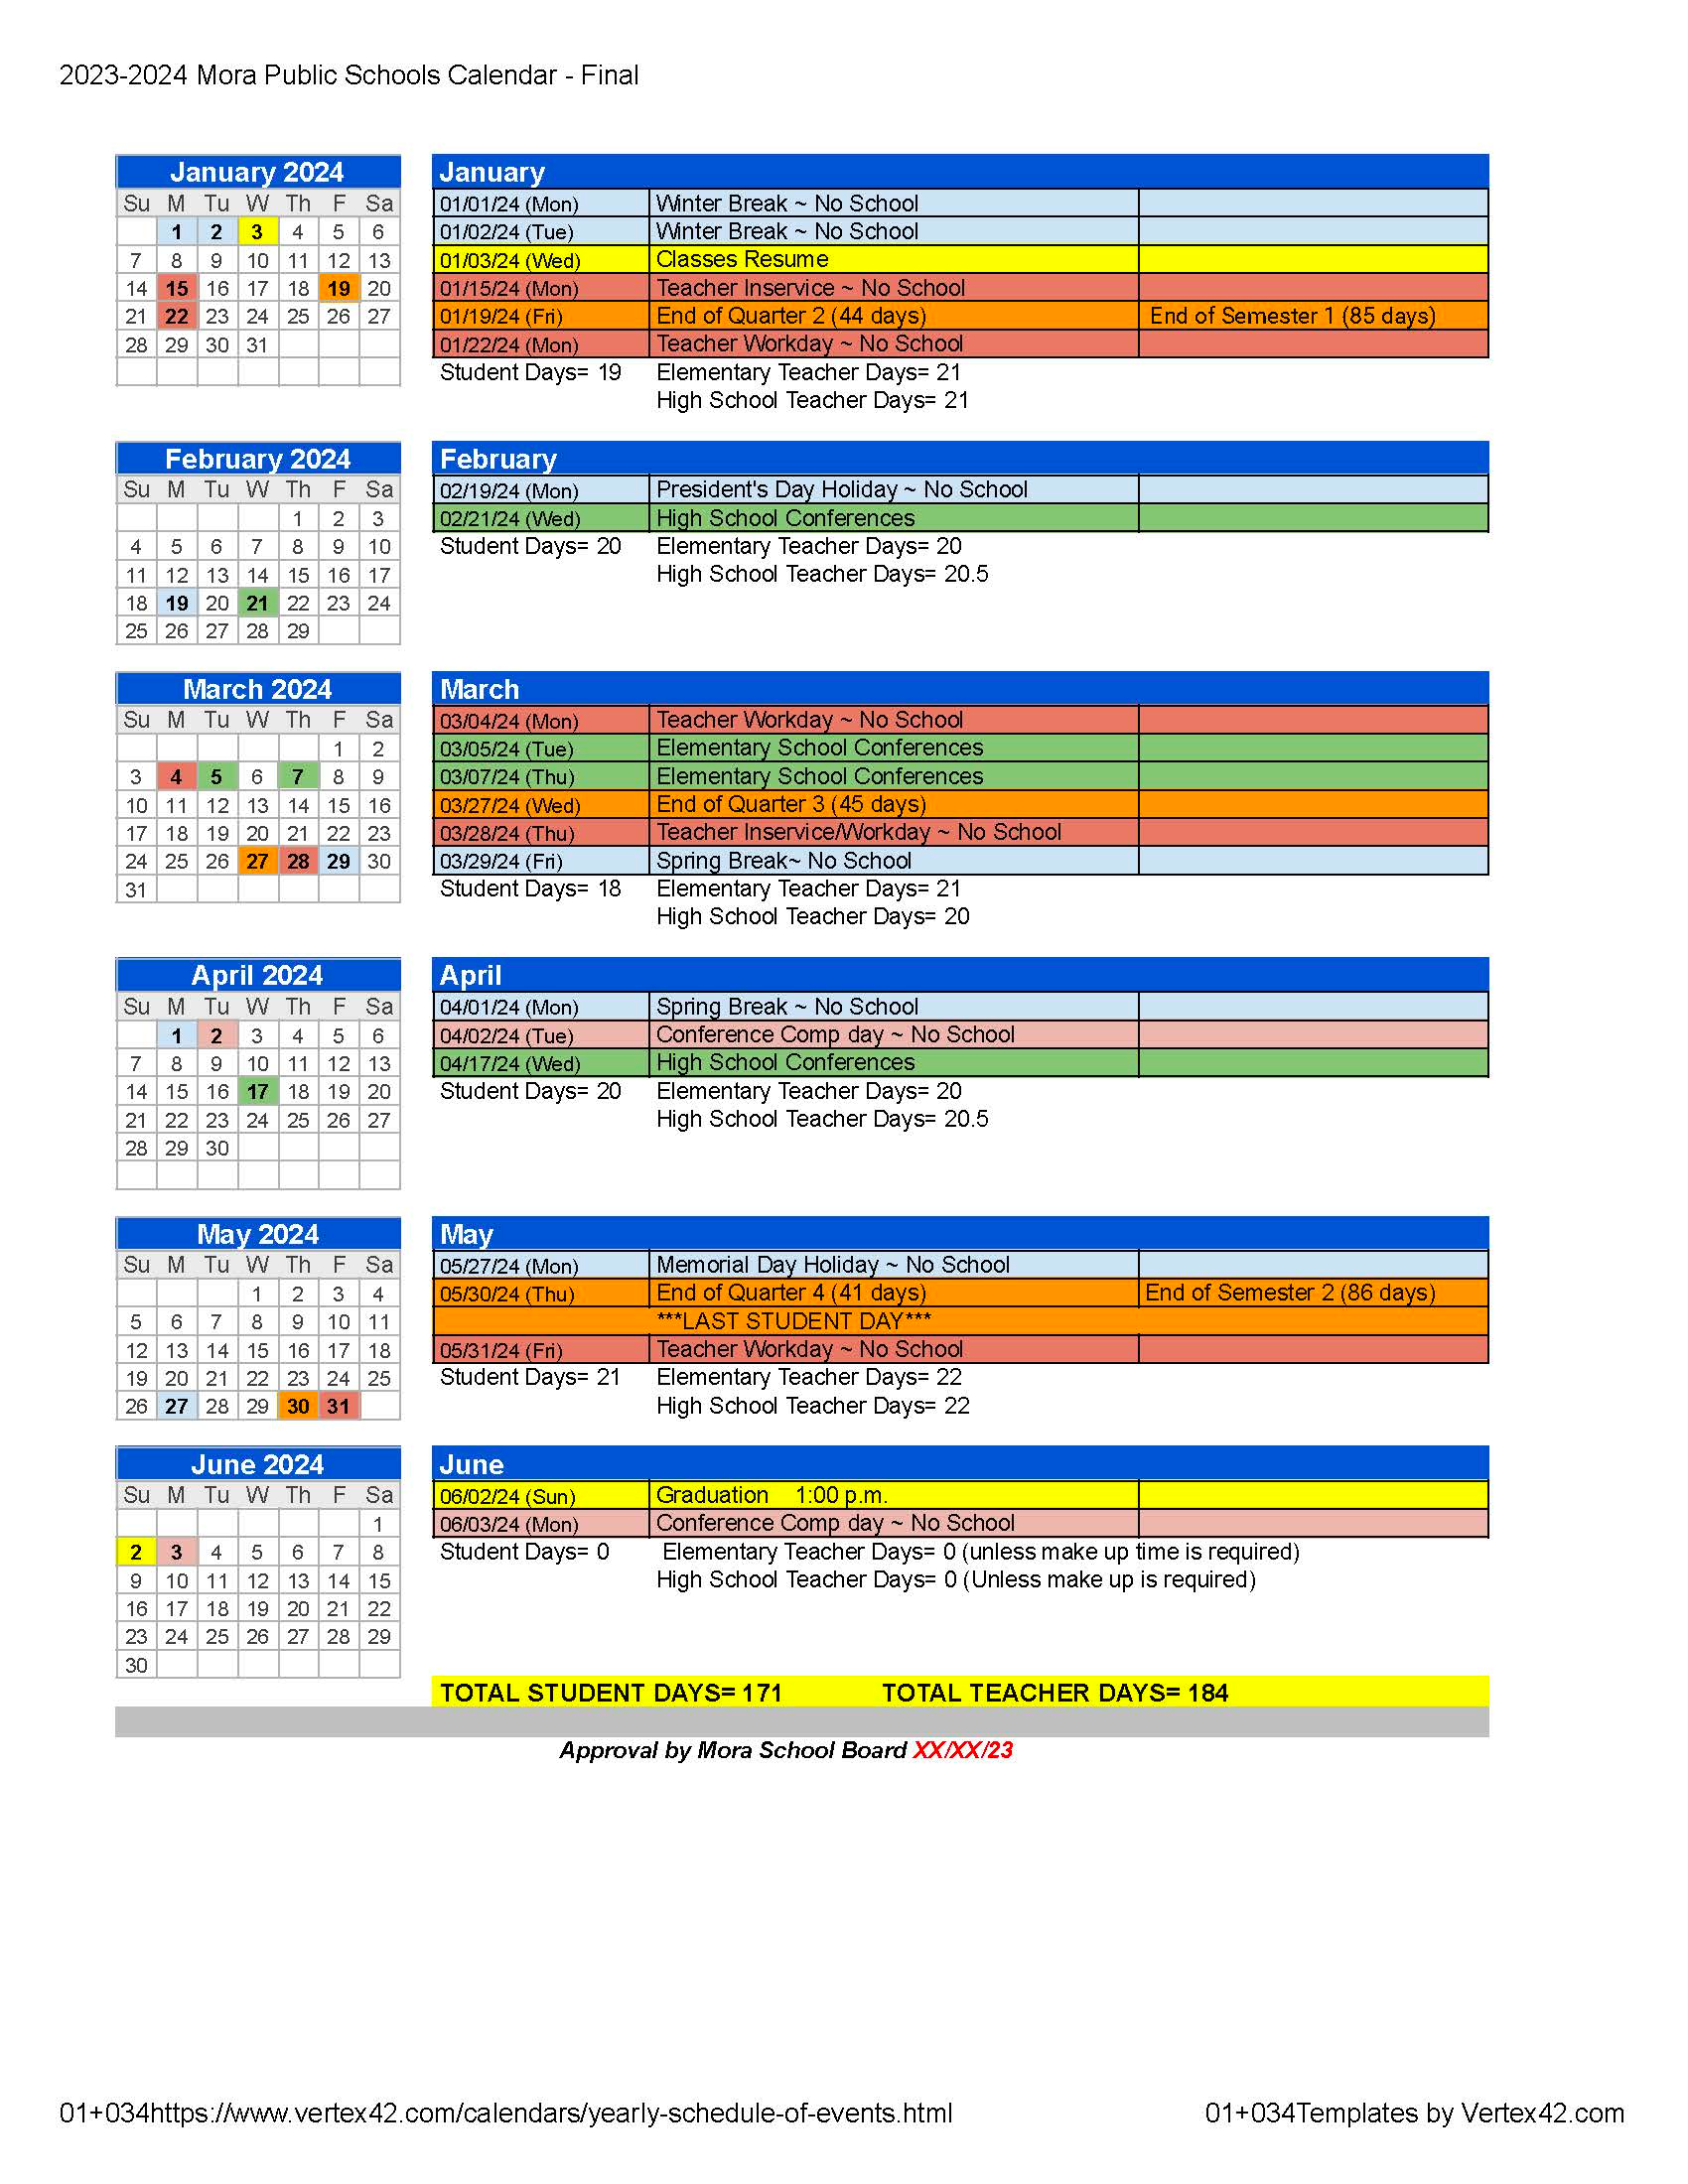 2023-2024 School Year Calendar